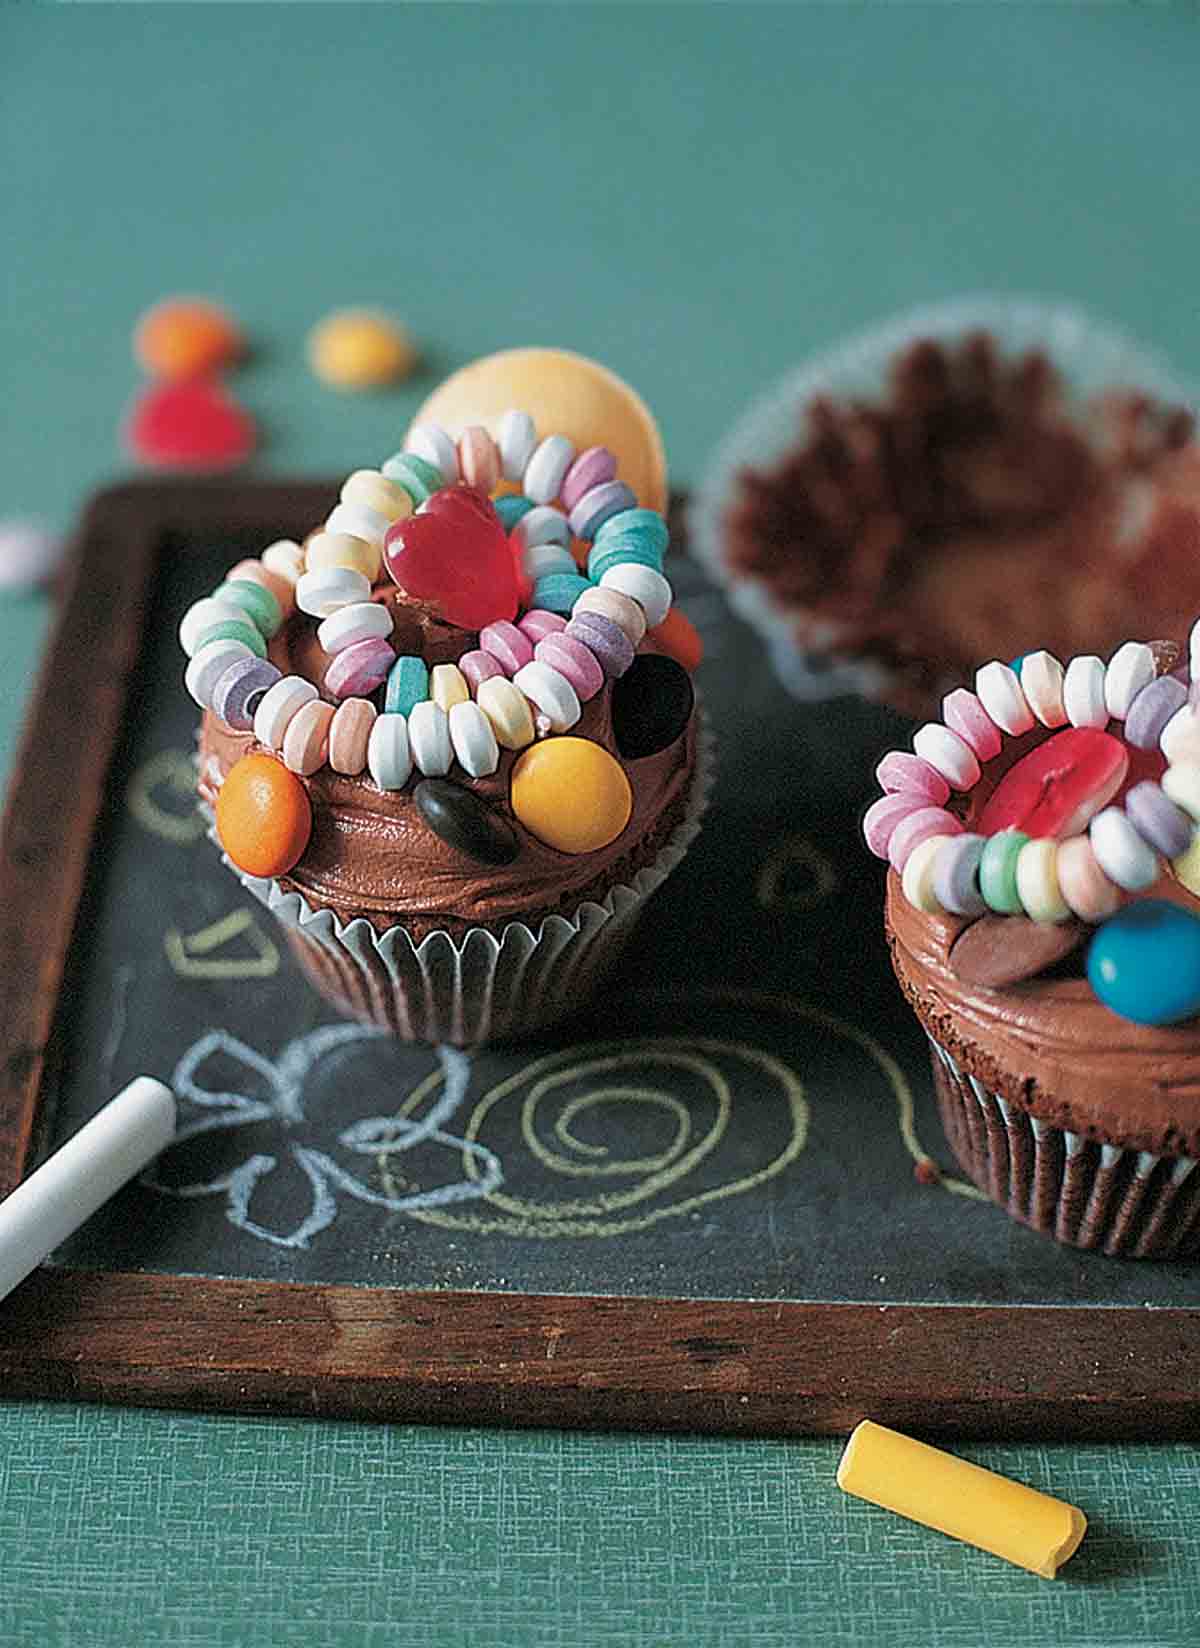 Chokladcupcakes toppade med chokladfrosting och godisbitar på en svart tavla för barn med kritabitar på sidan.